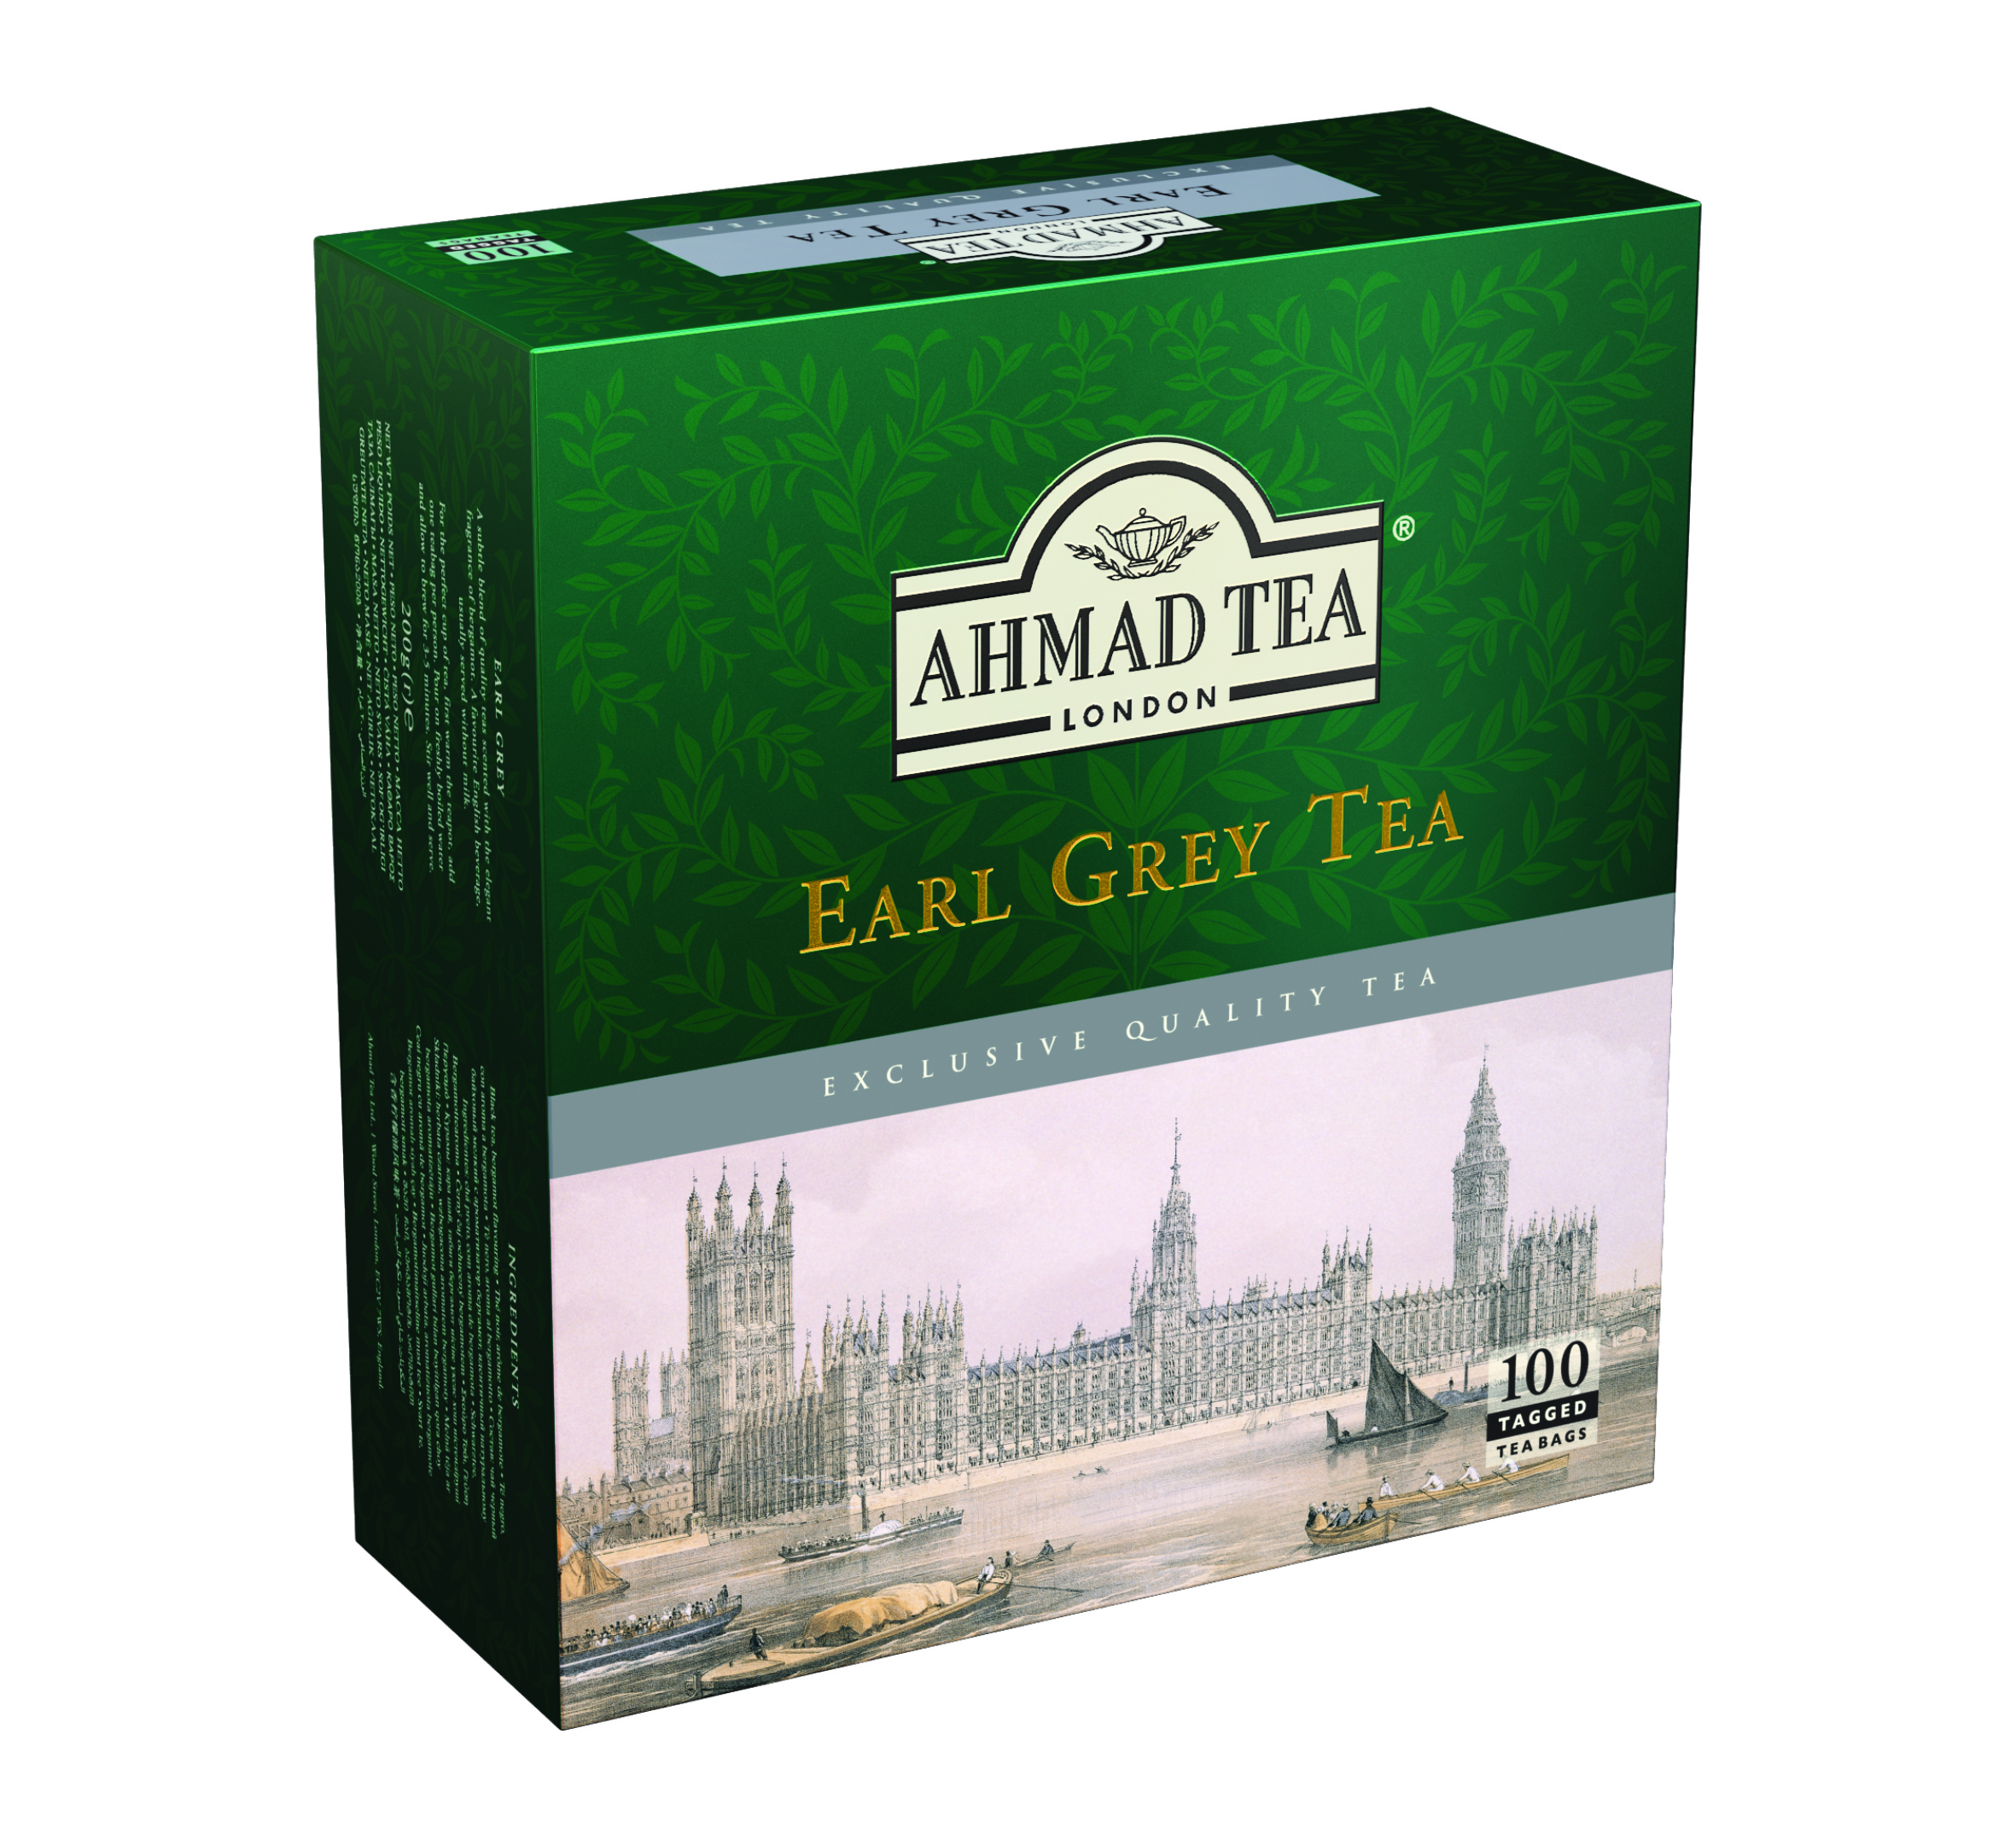 Ahmad Tea Earl Grey Herbata Expresowa 100 saszetek 200 g